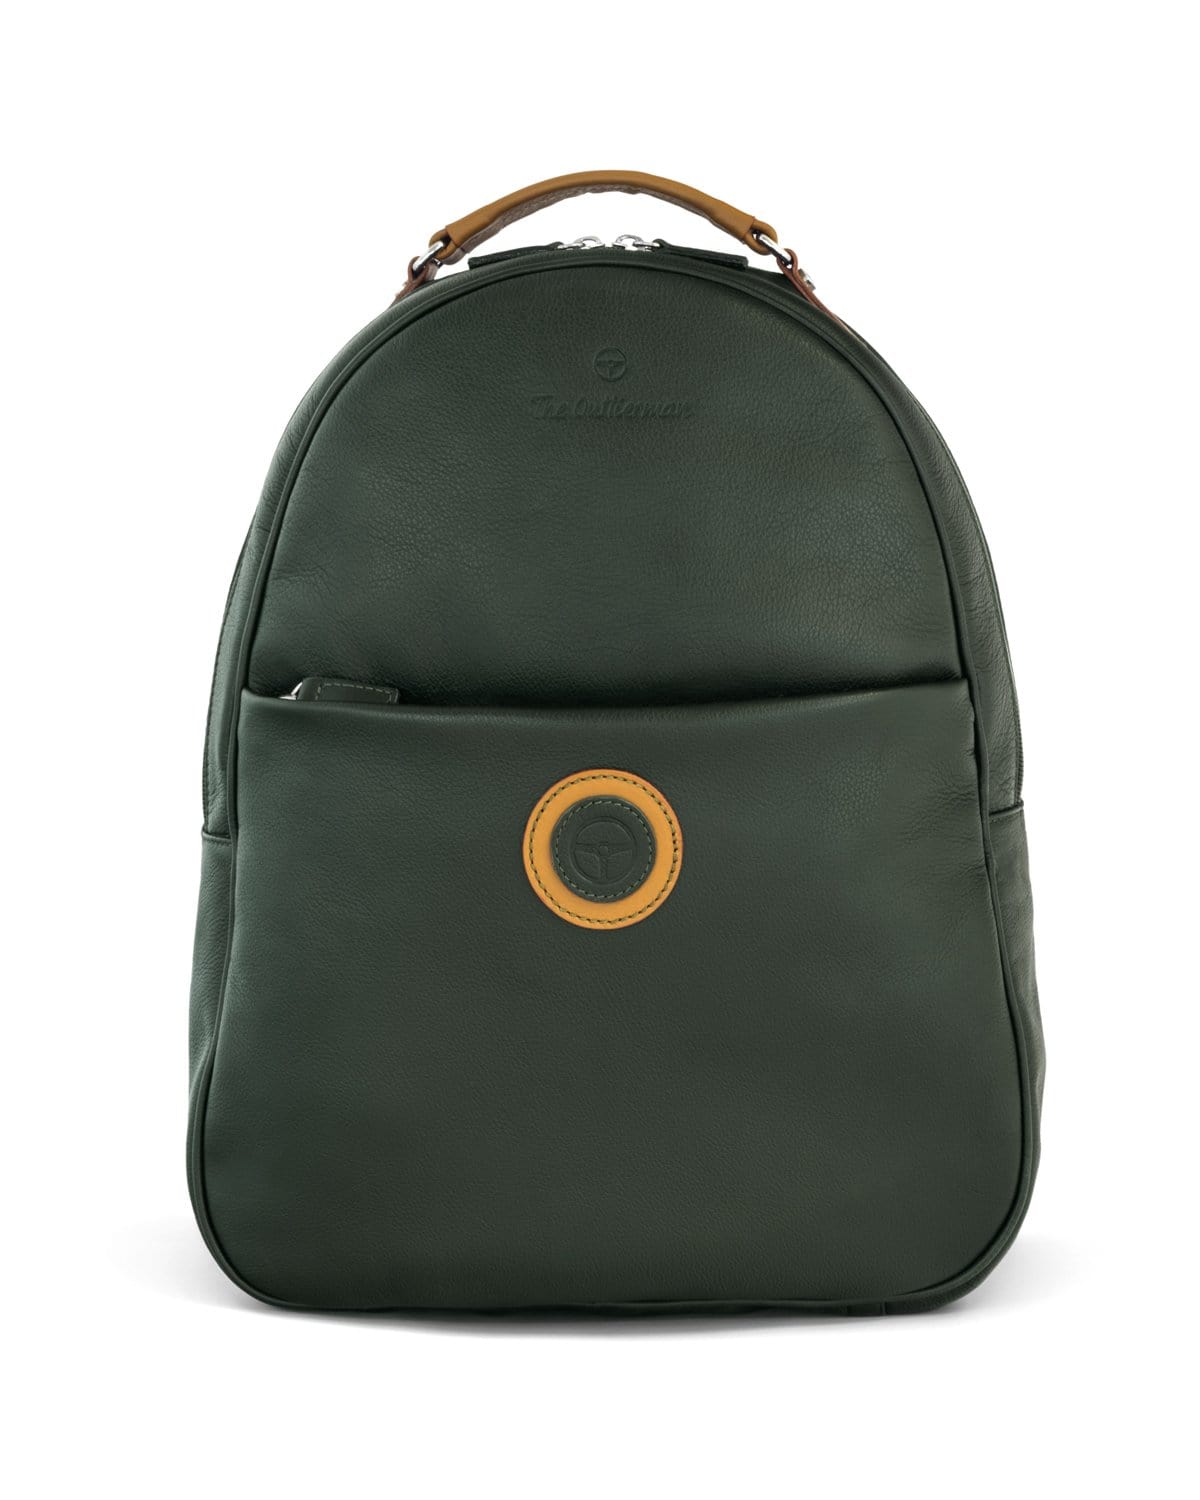 Buy Green Zip Around Backpack Online - Accessorize India